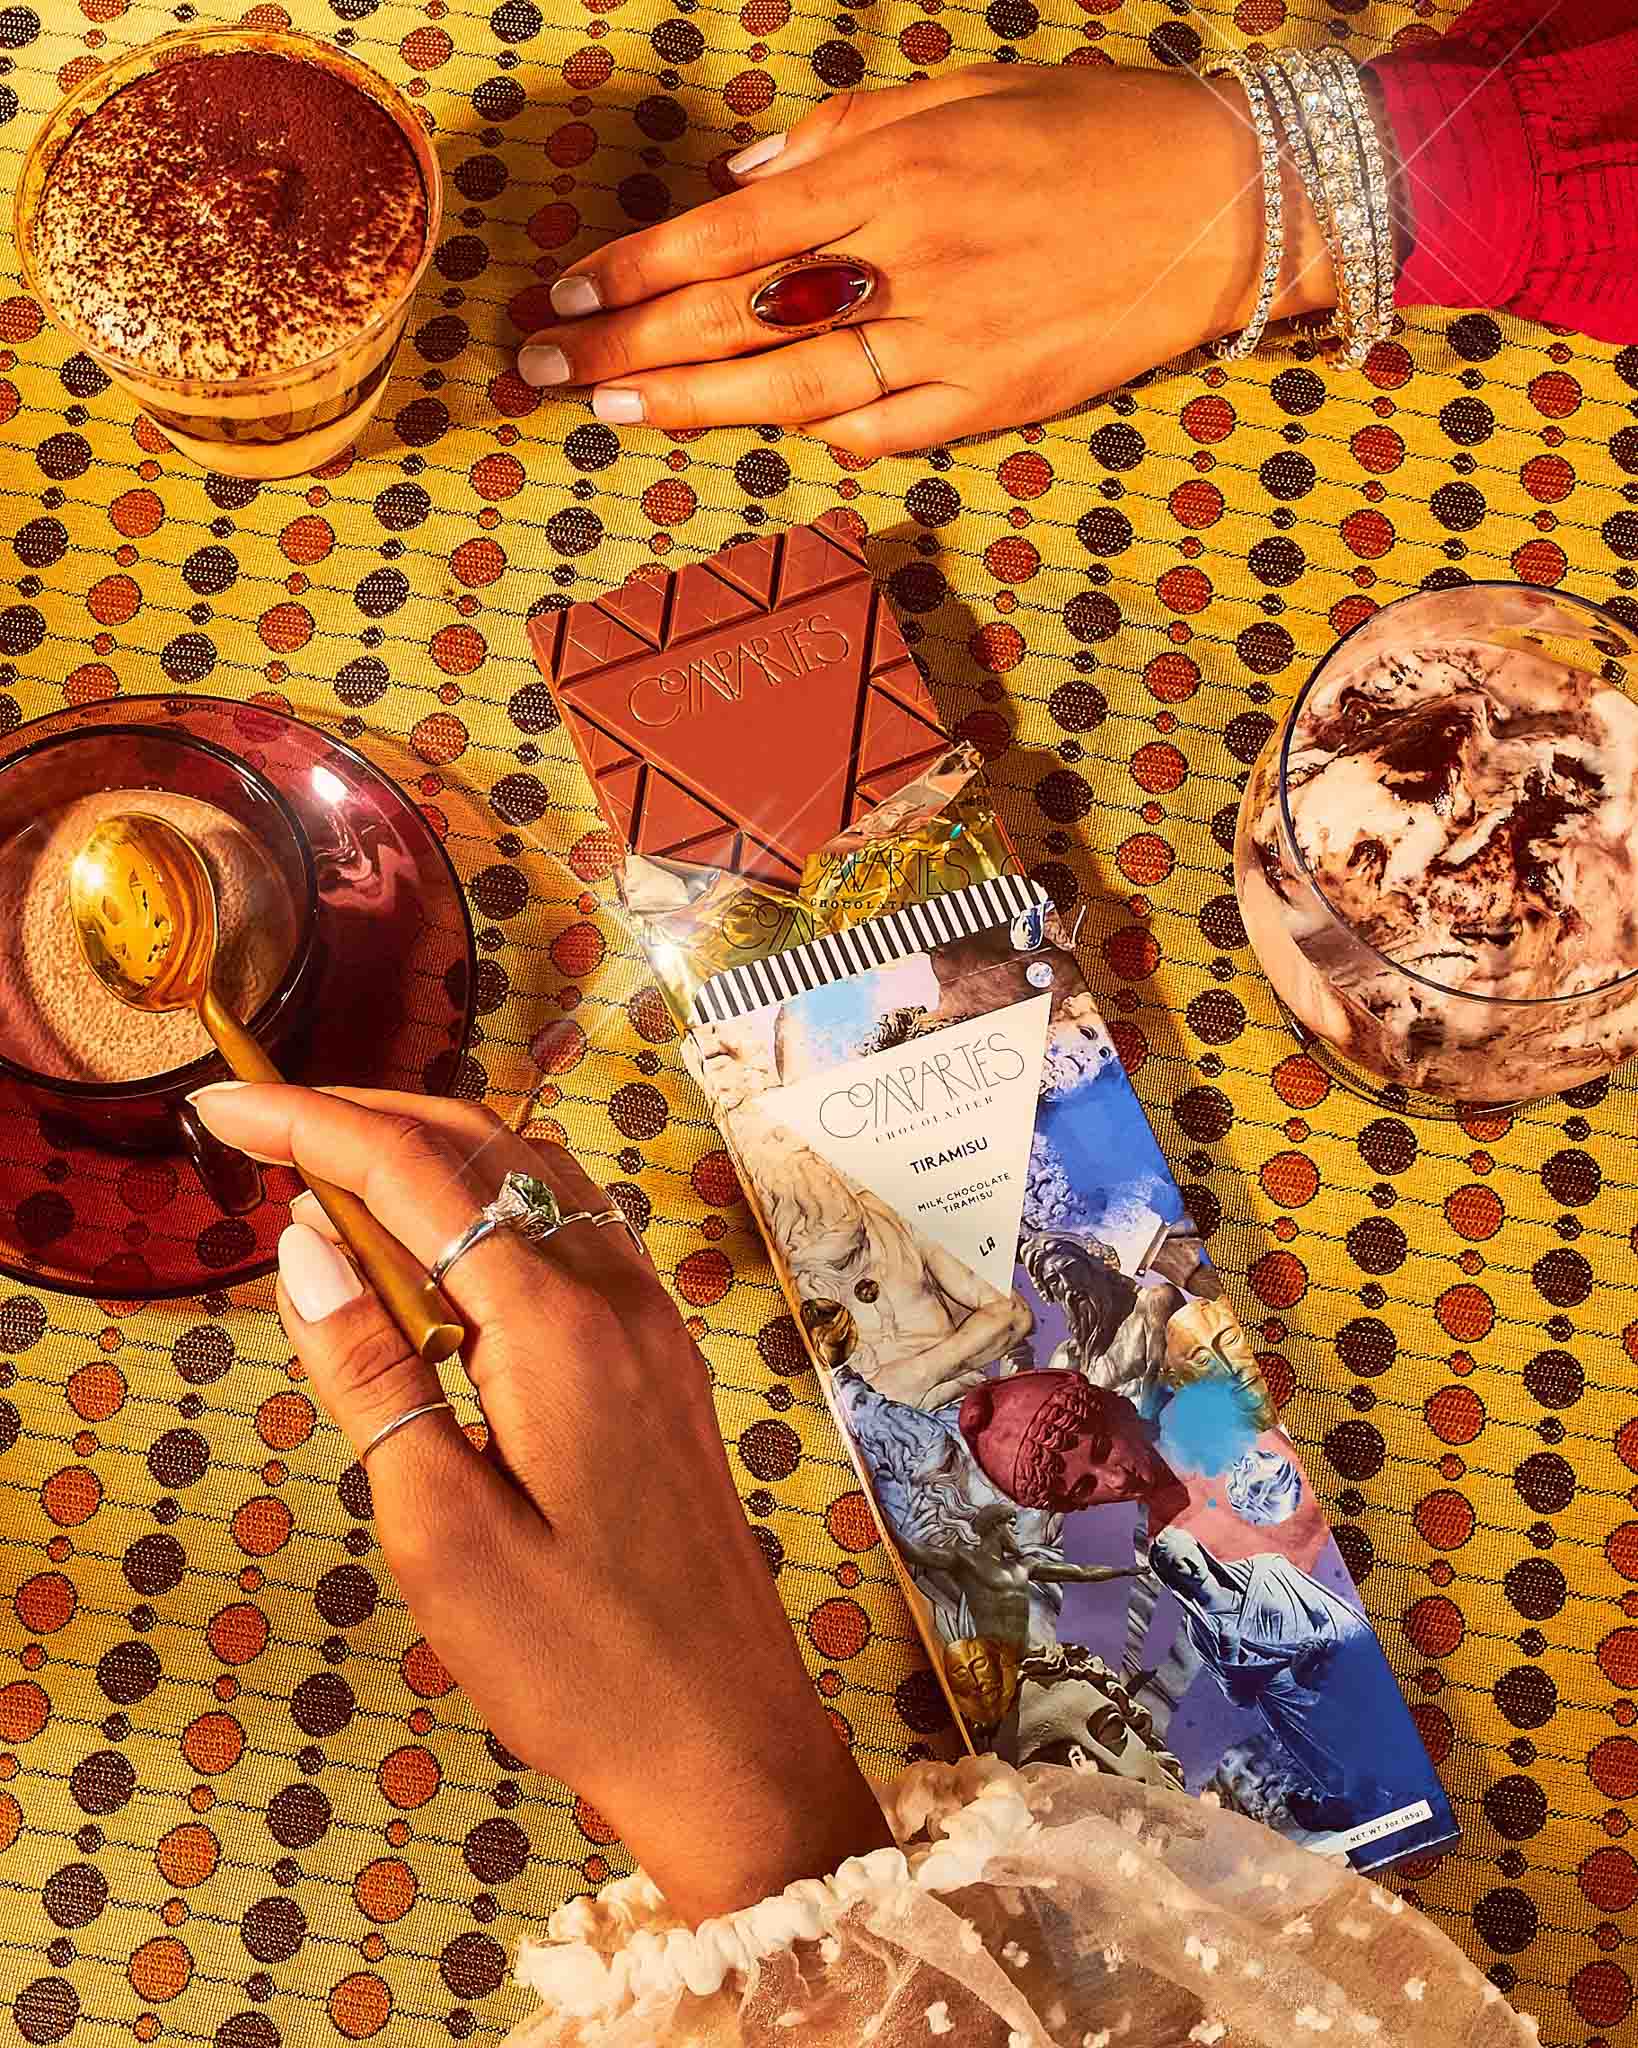 Luxury Chocolate Gift Box - Tiramisu Gourmet Fancy Chocolate Bar - Great for Gifting